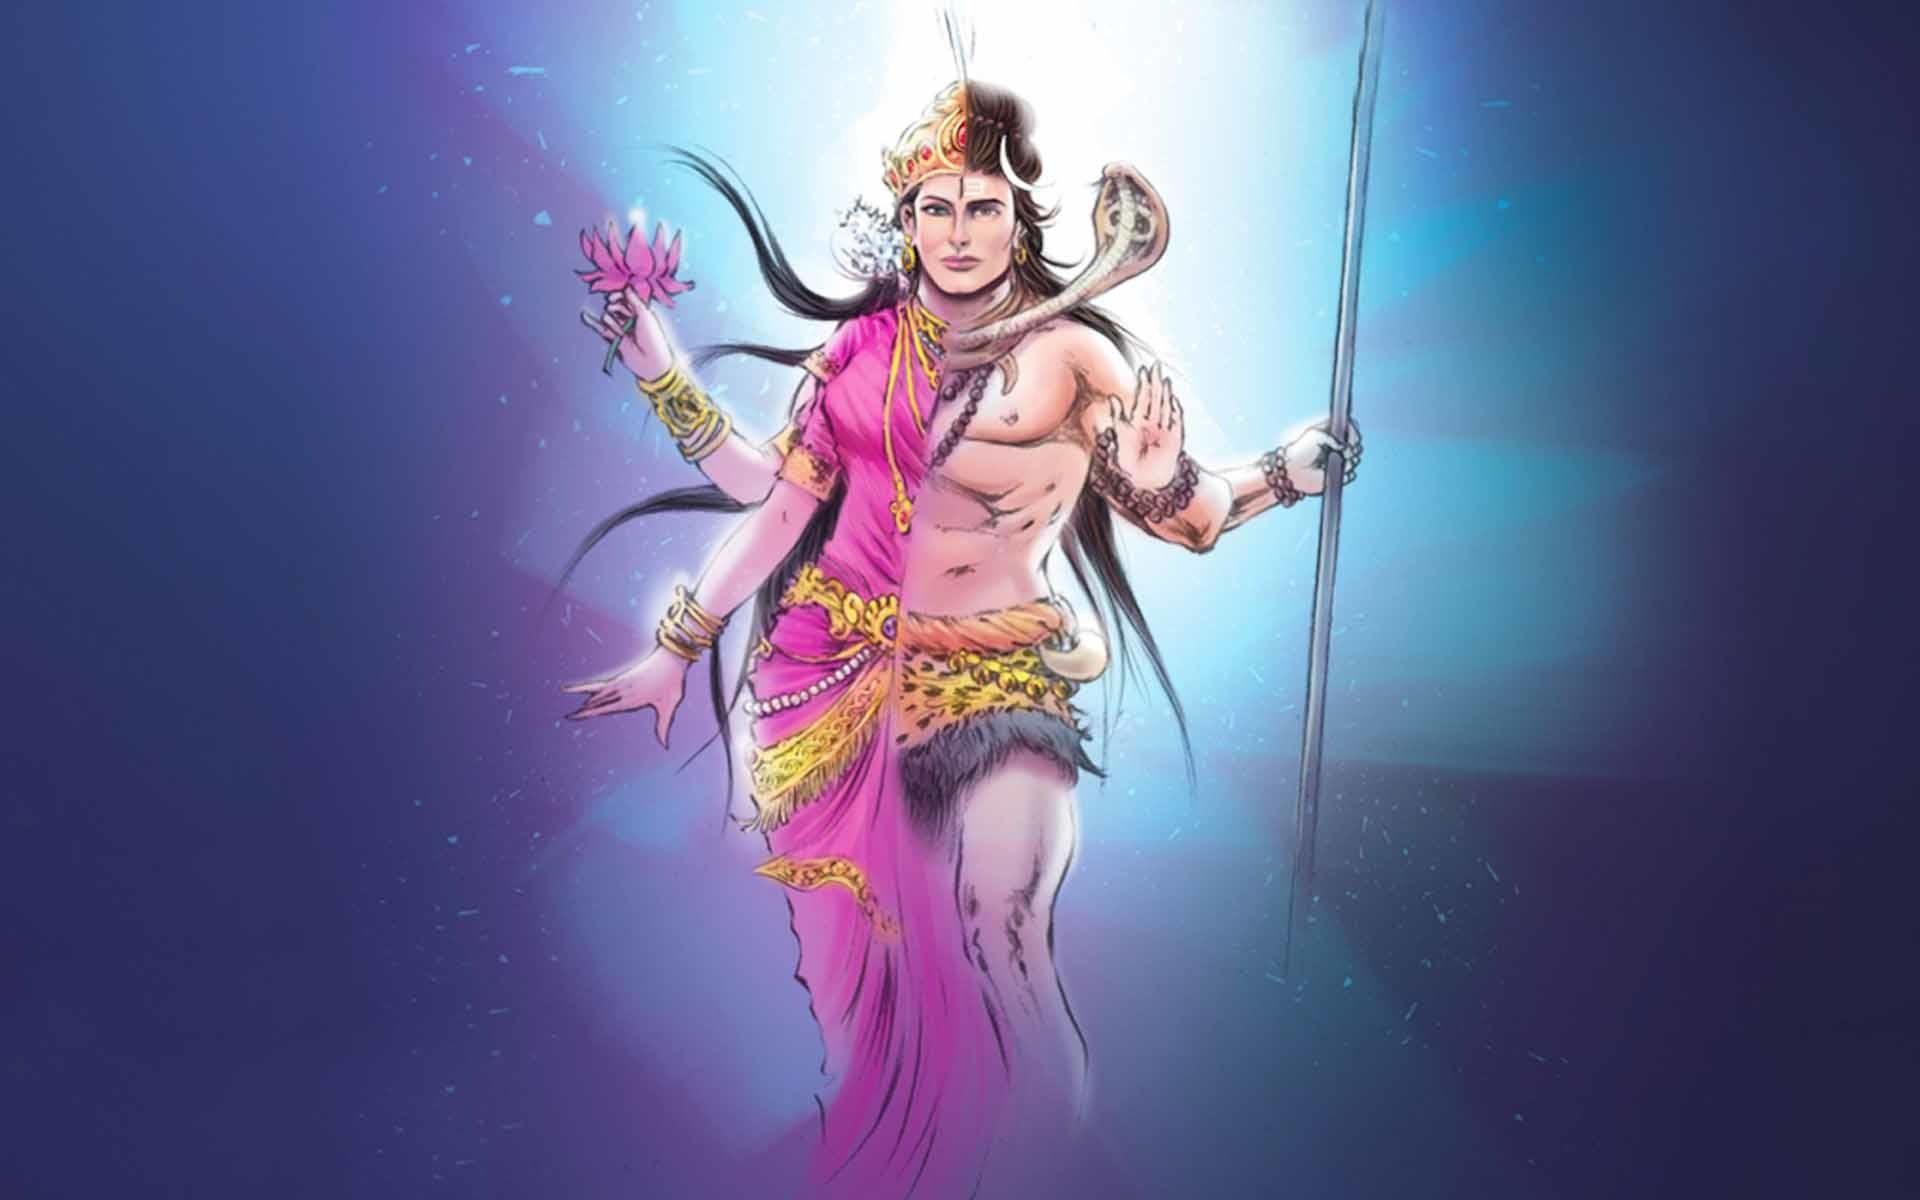 Lord Shiva Wallpaper HD